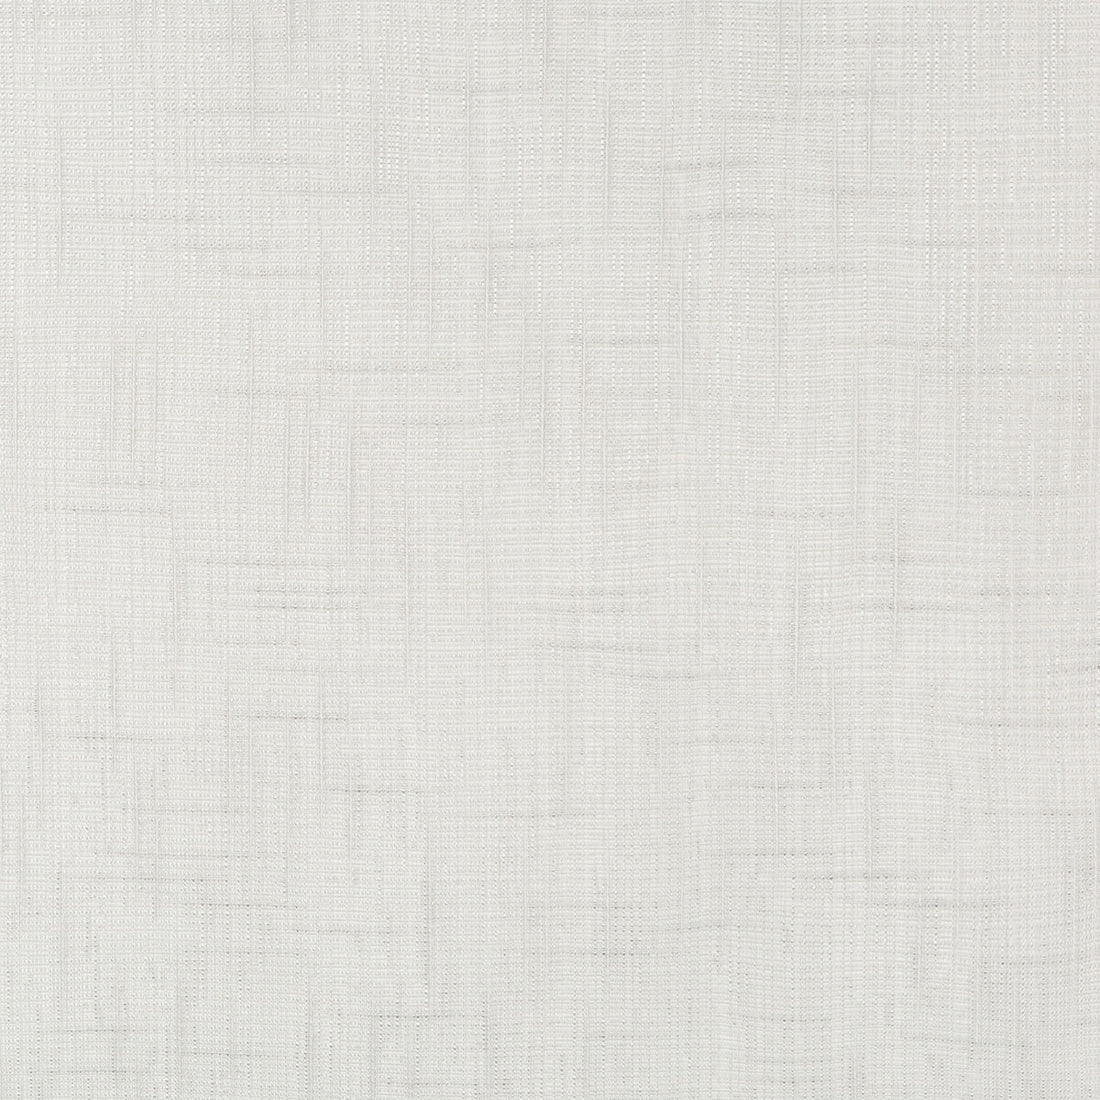 Kravet Basics fabric in 4722-11 color - pattern 4722.11.0 - by Kravet Basics